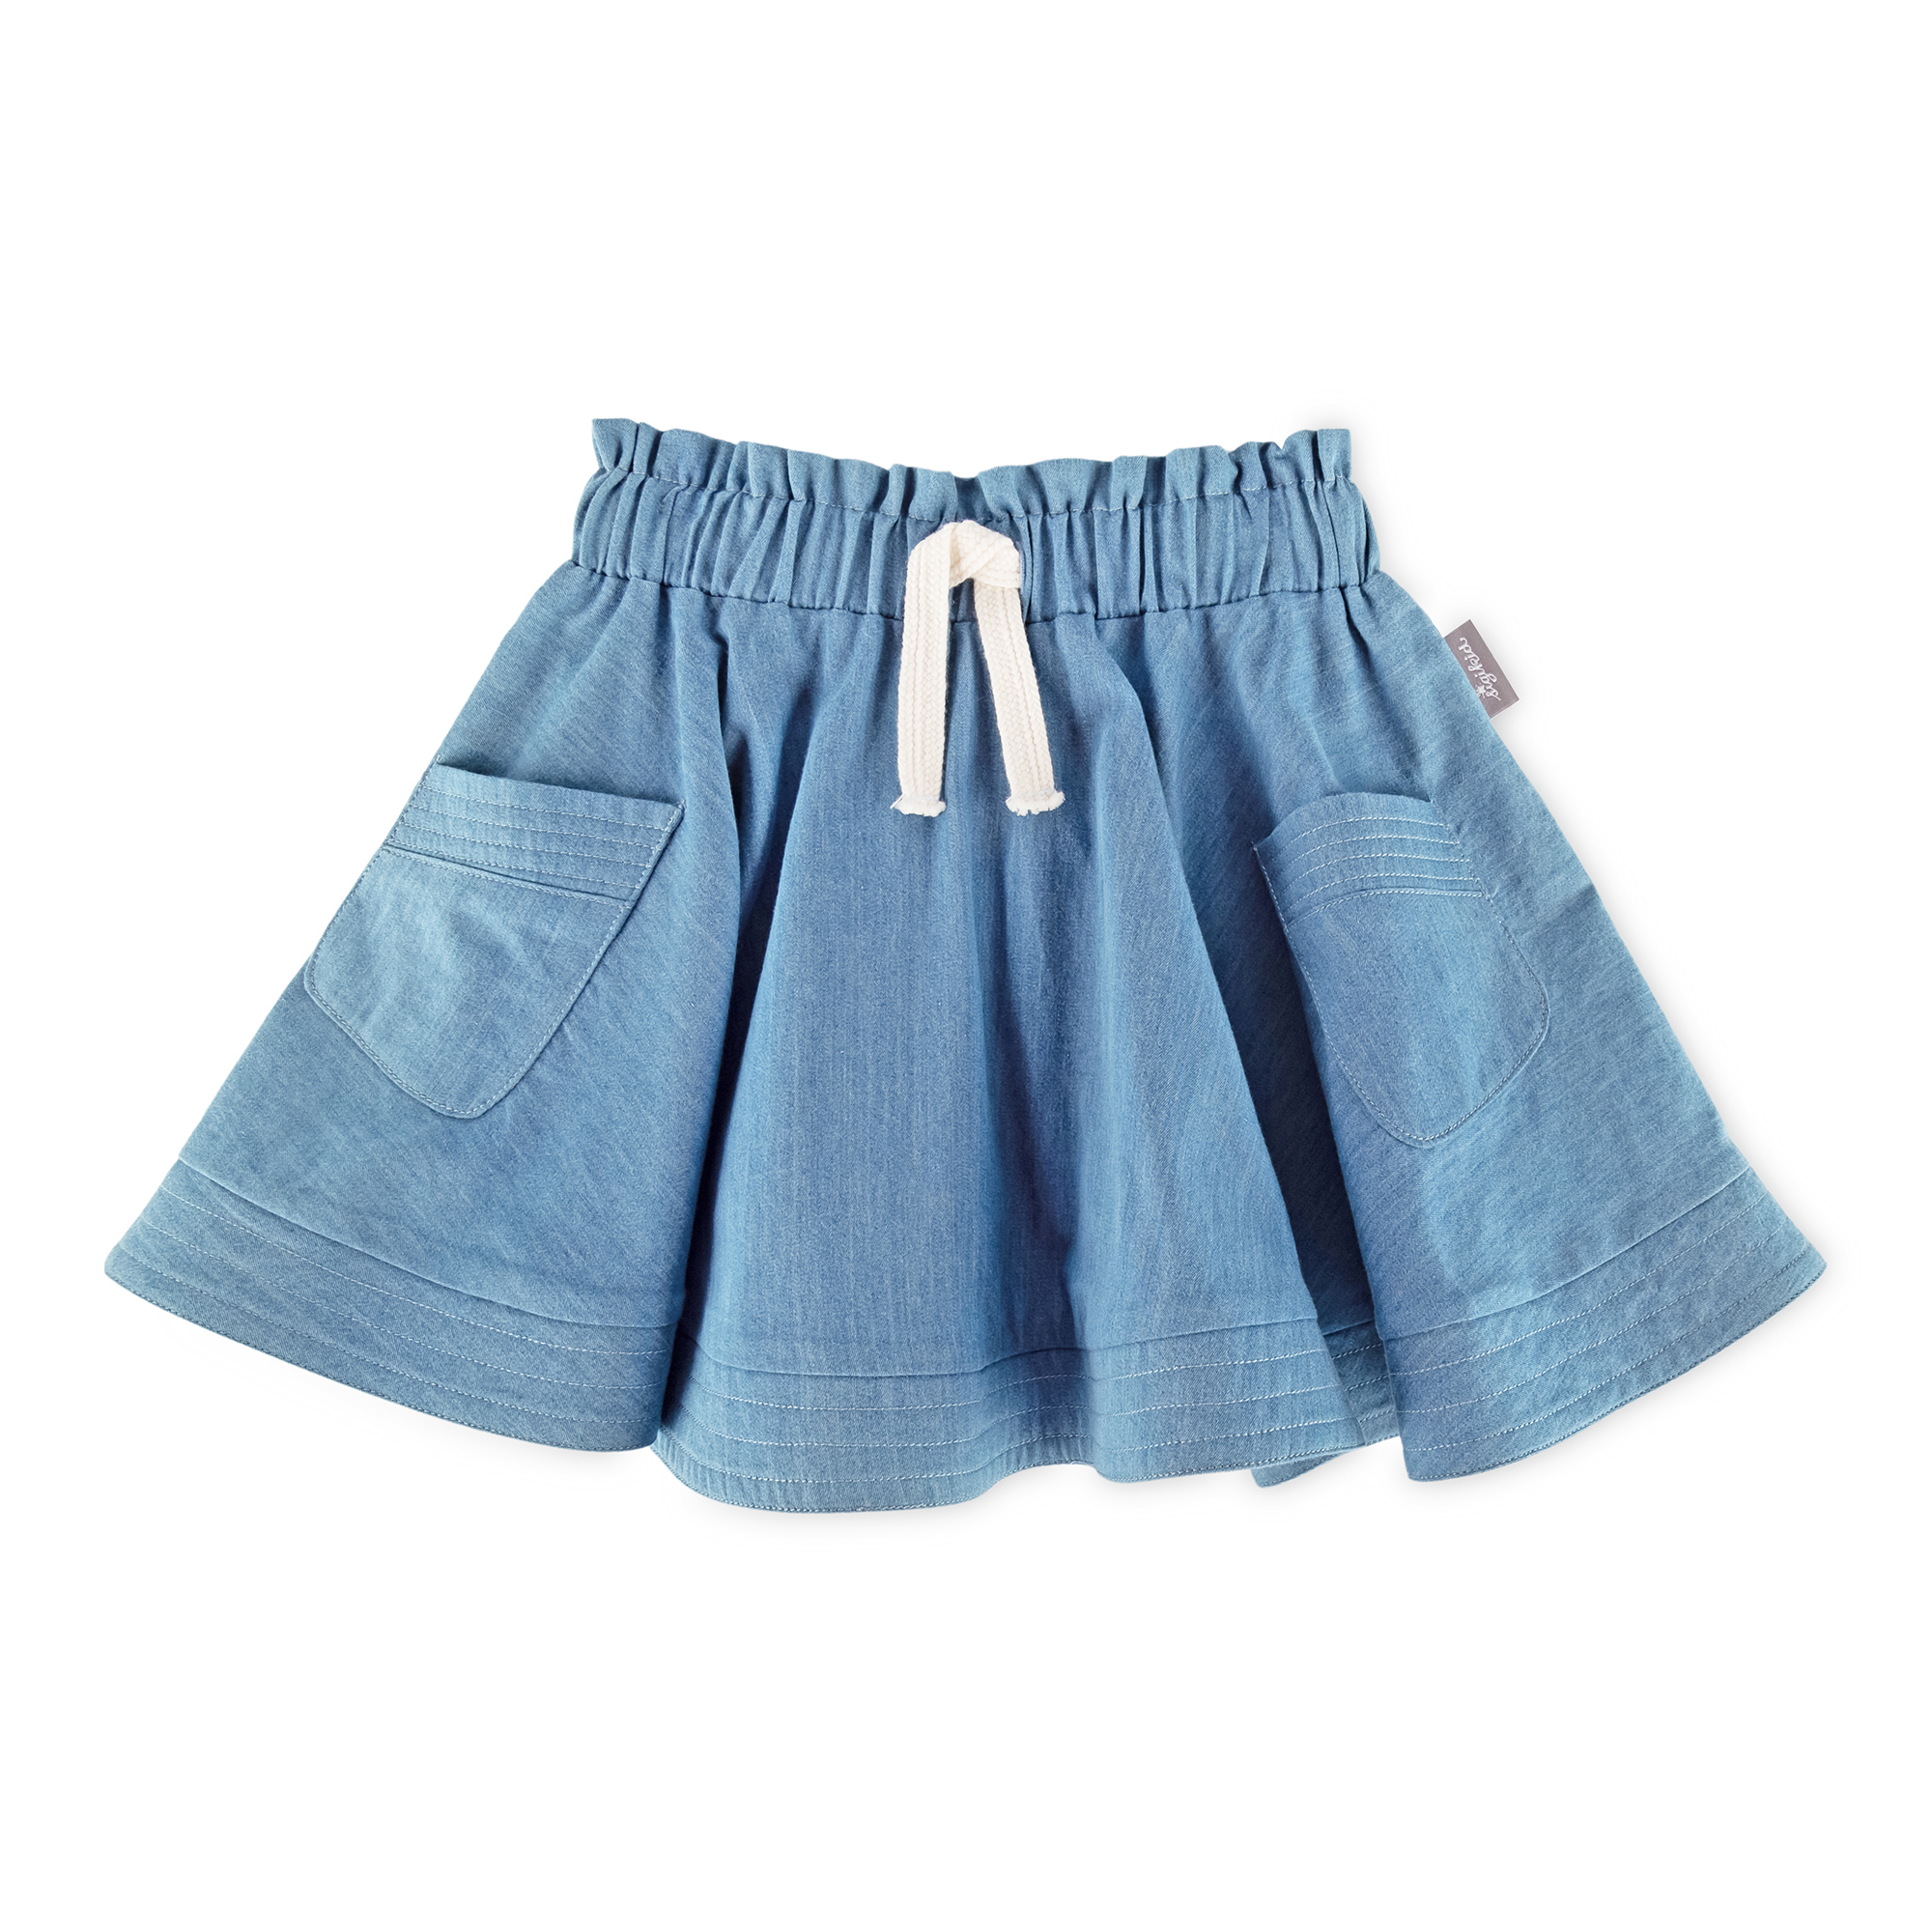 Kids' girls' summer circle skirt with pockets, light blue